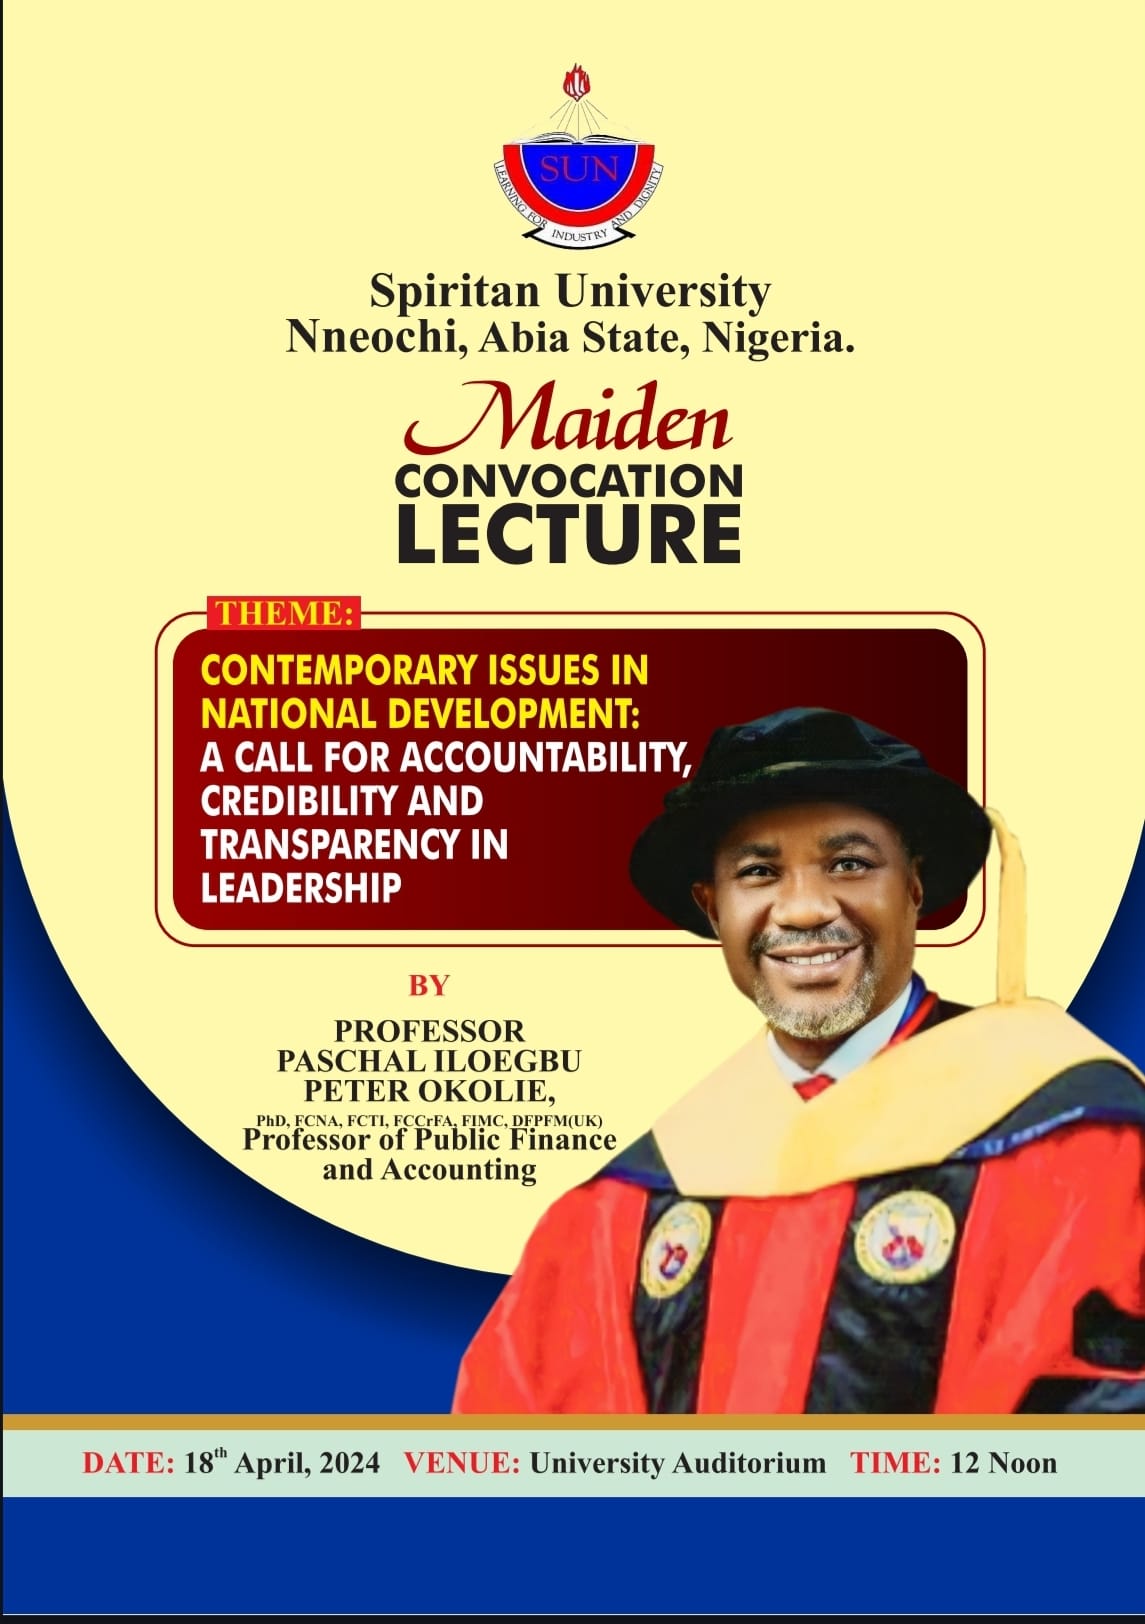 Spiritan University Nneochi, Maiden Convocation Lecture